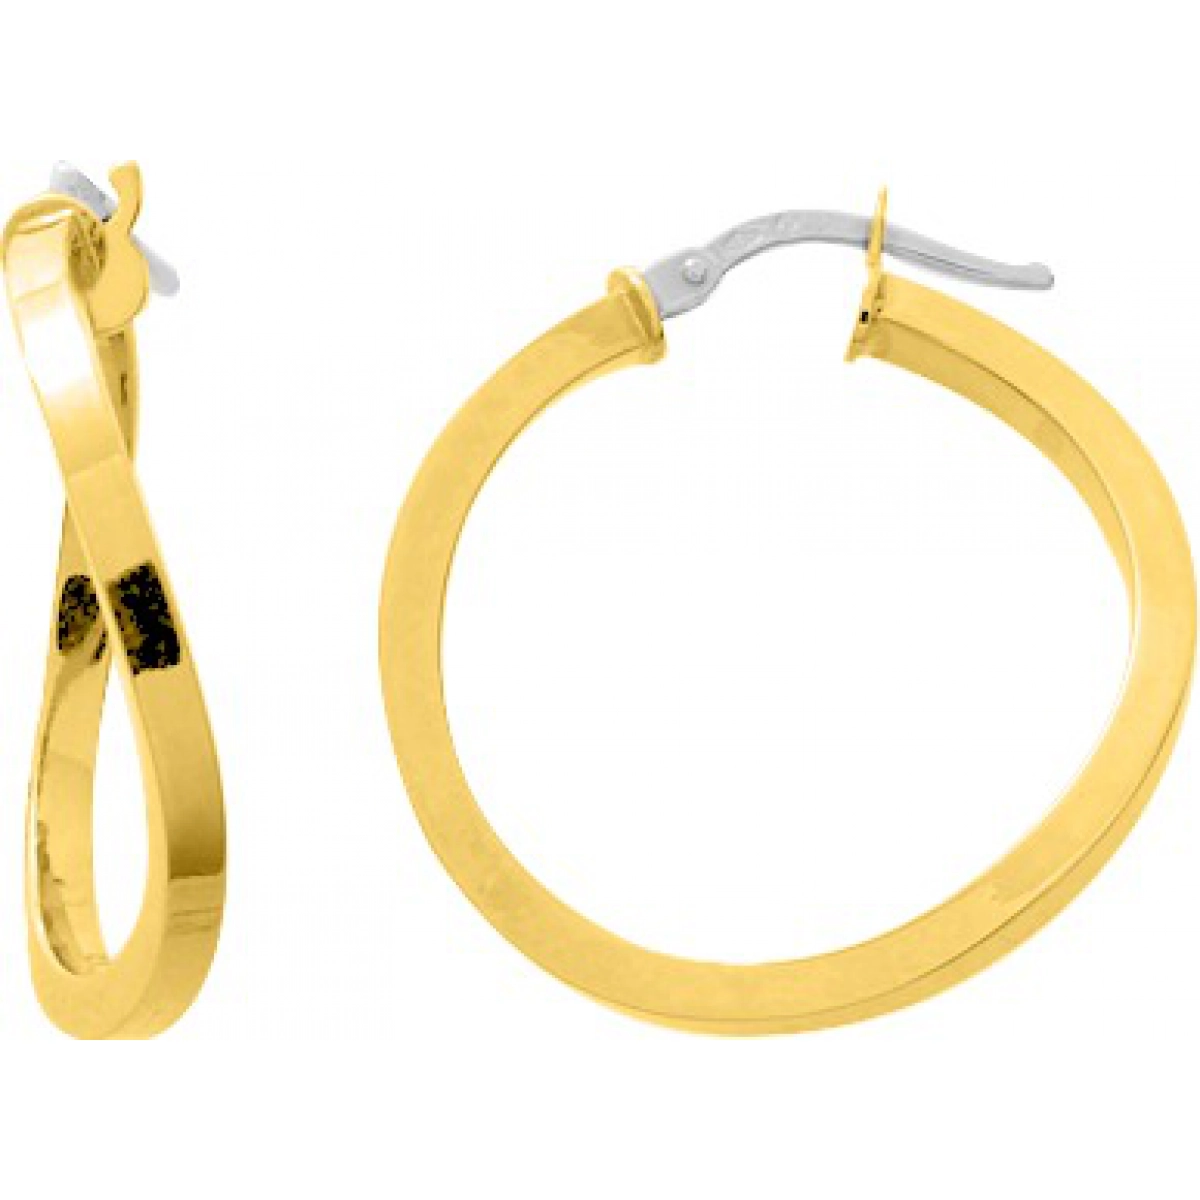 Hoops earrings pair 9K YG  Lua Blanca  9K3524.52.0